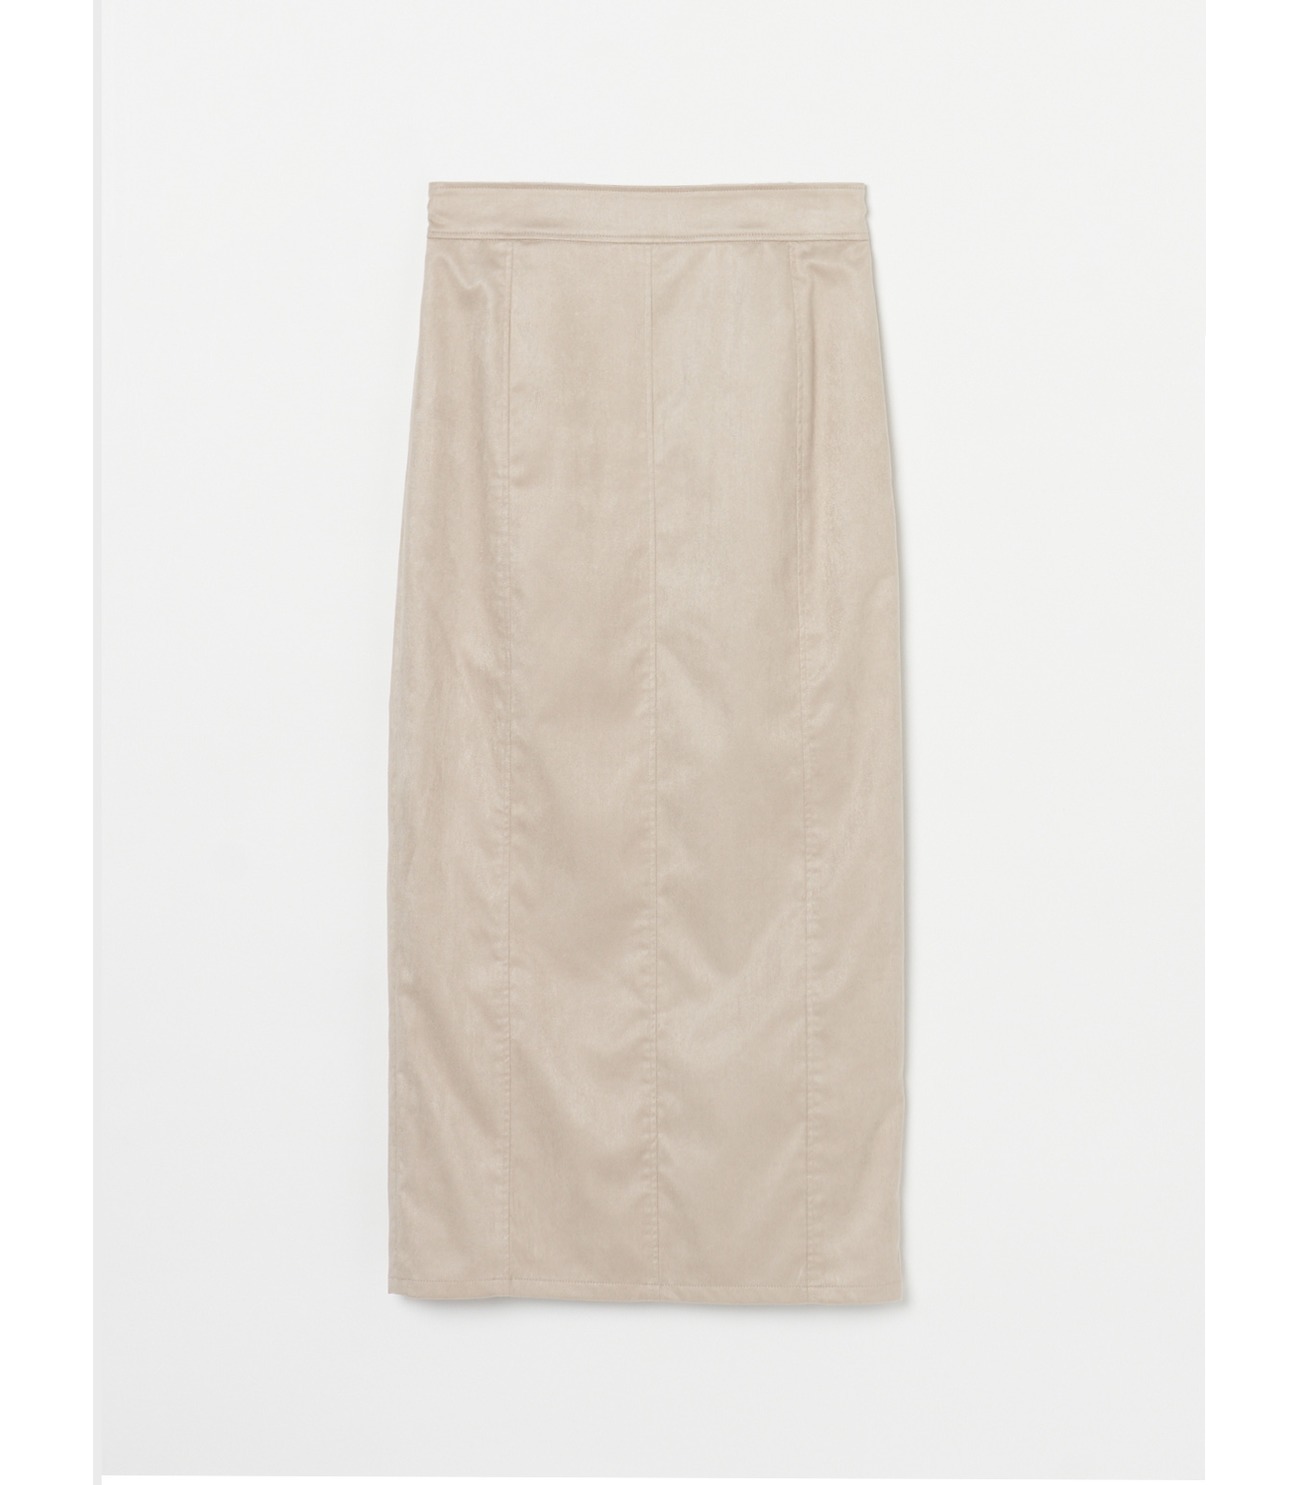 Fake suede jumper skirts 詳細画像 grey beige 9